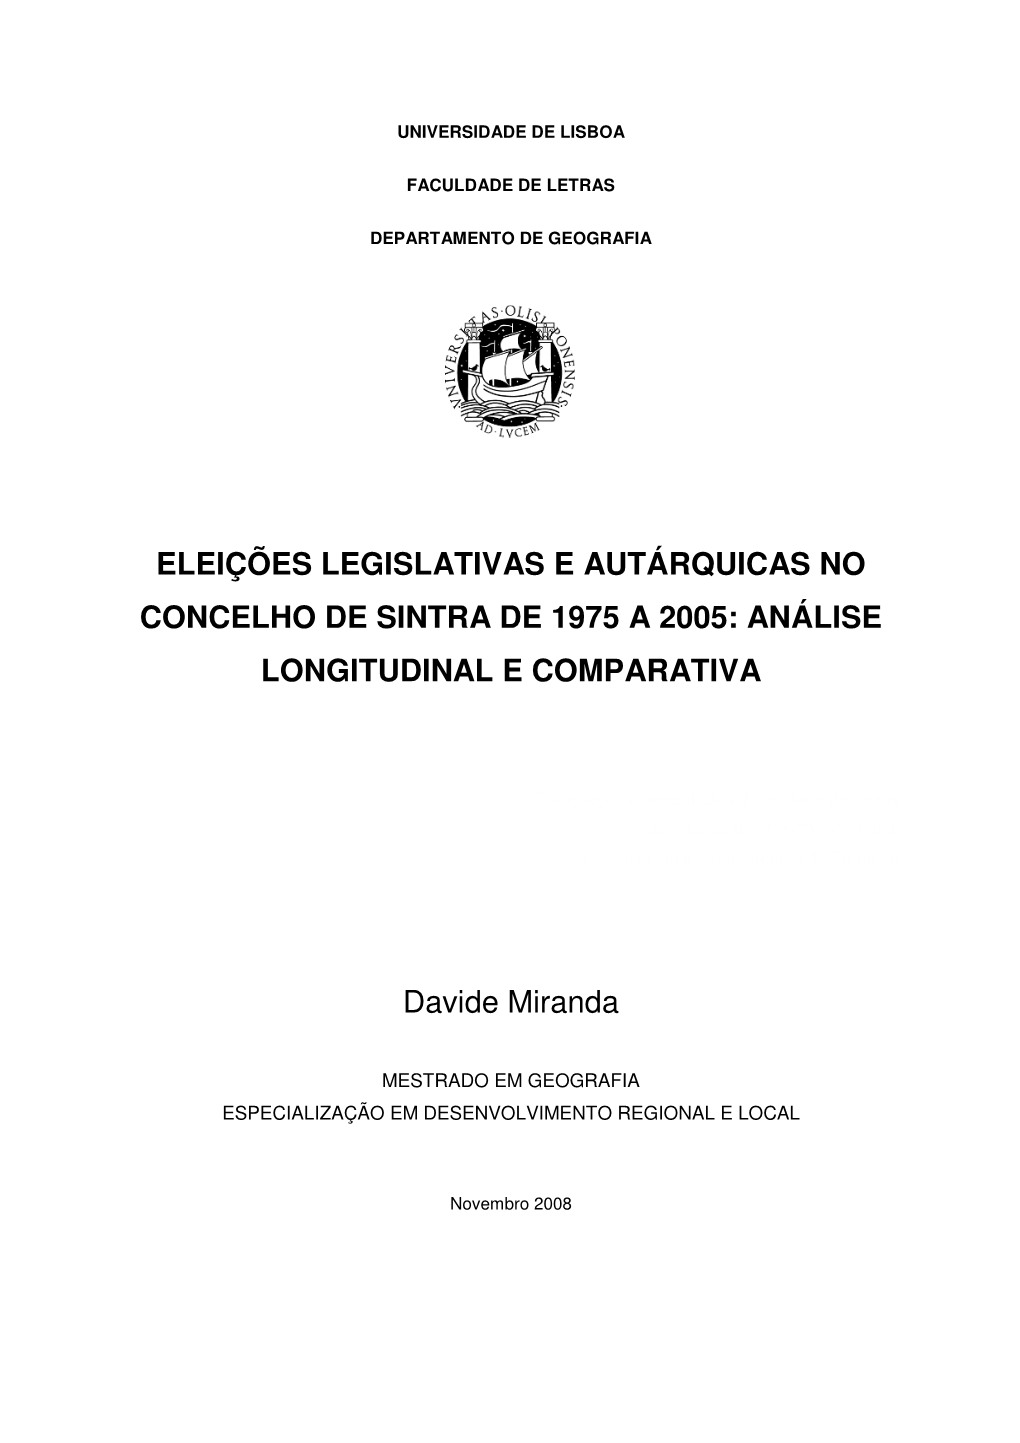 Eleições Legislativas E Autárquicas No Concelho De Sintra De 1975 a 2005: Análise Longitudinal E Comparativa